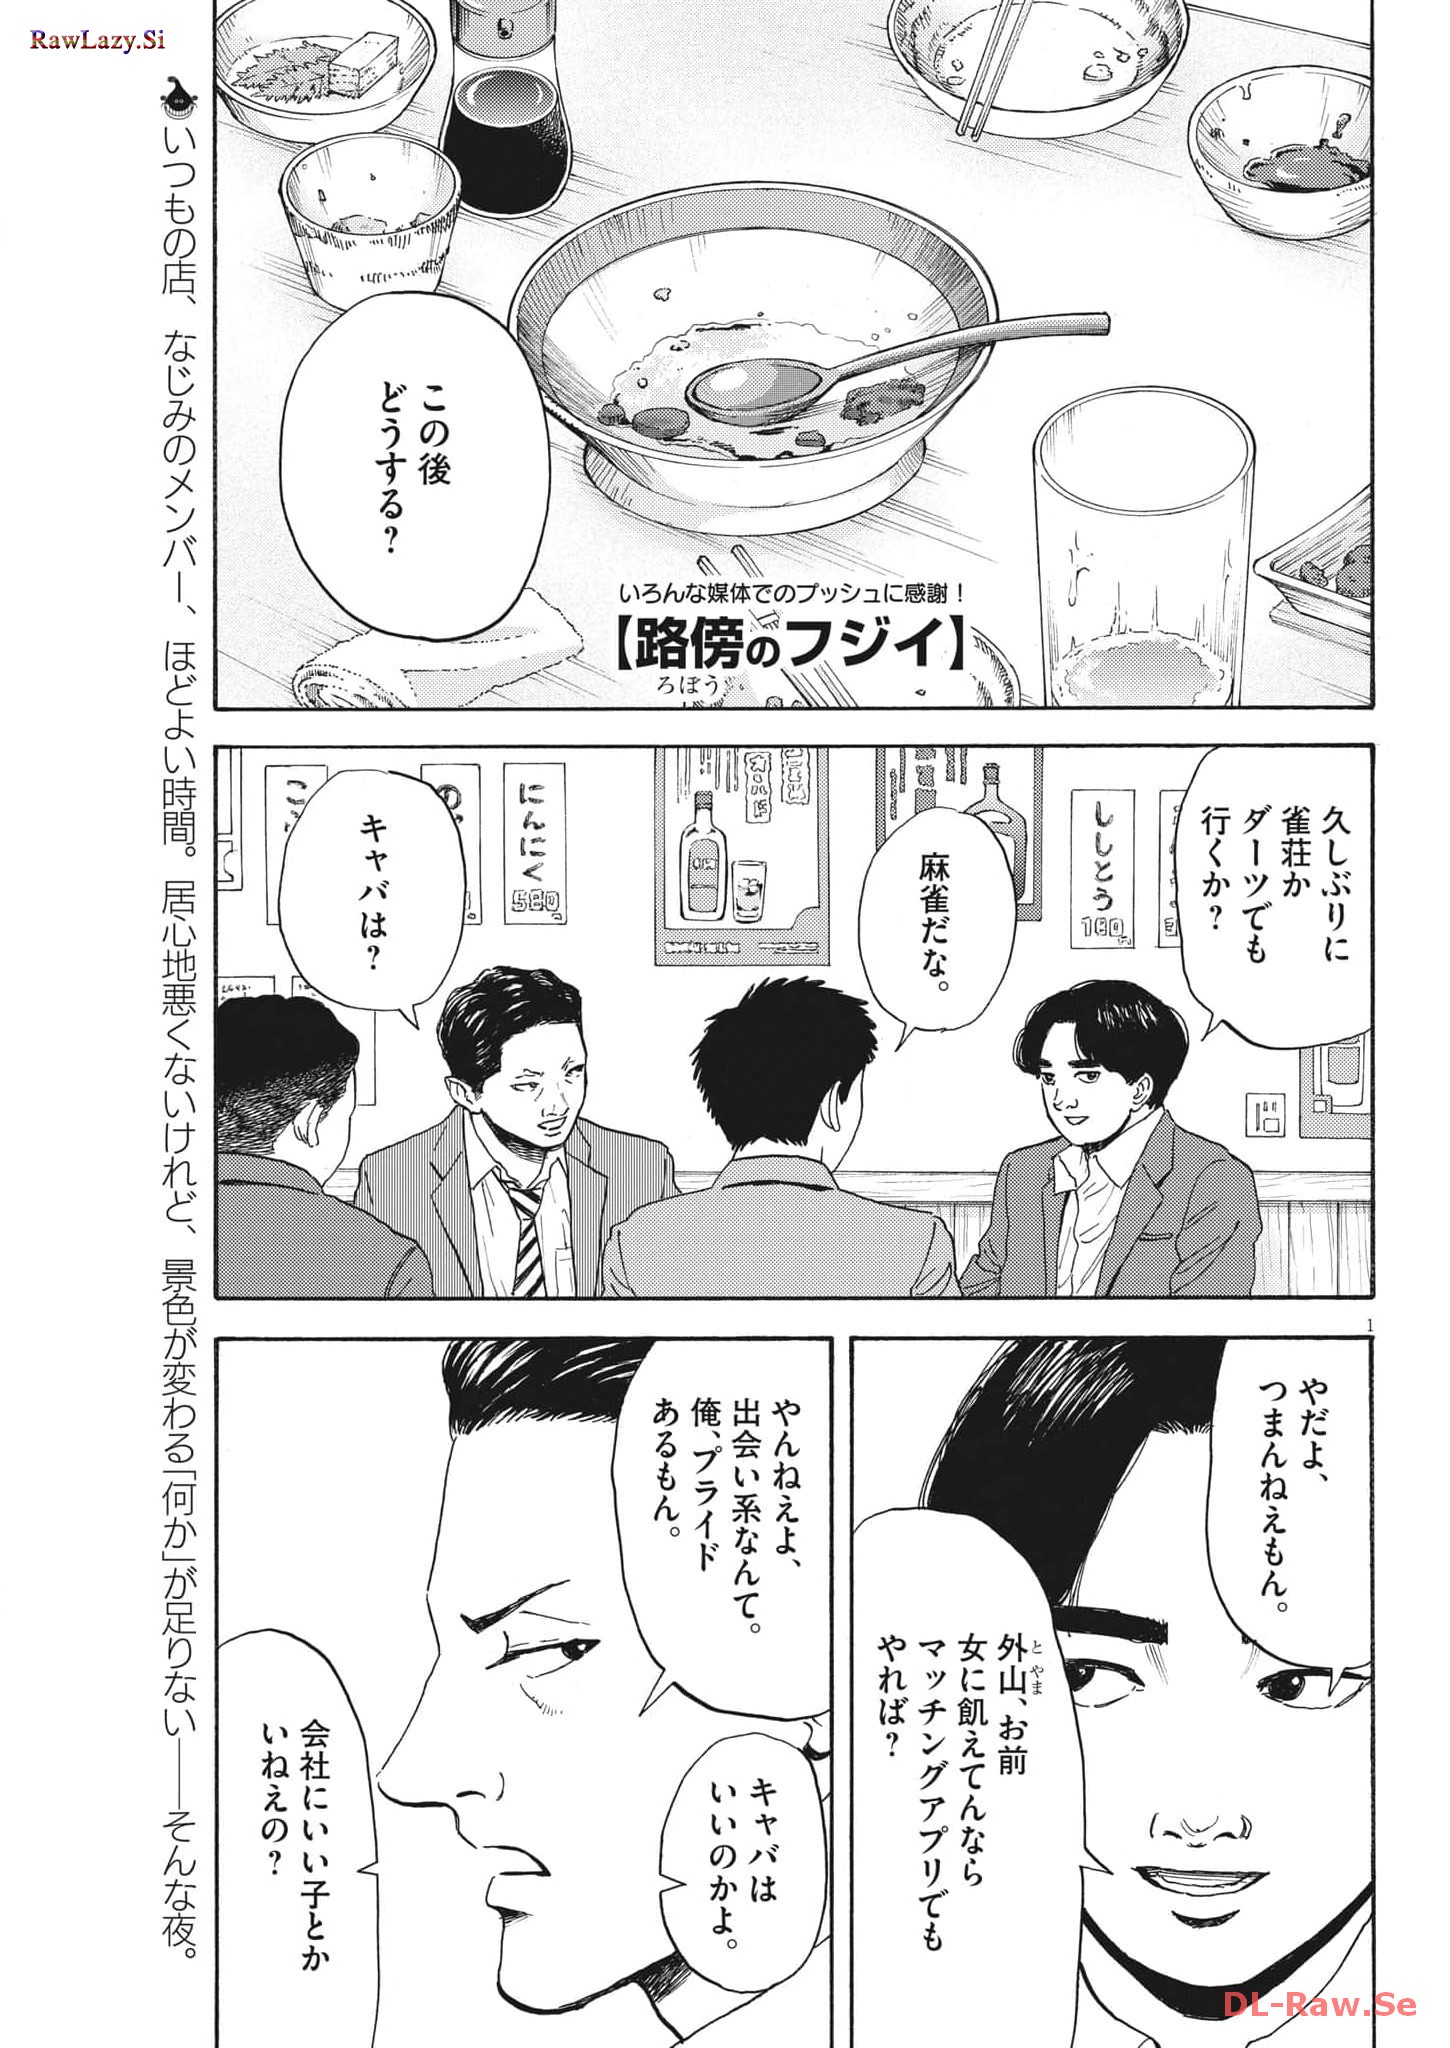 Robou no Fujii – Idai Naru Bonjin kara no Tayori - Chapter 16 - Page 1